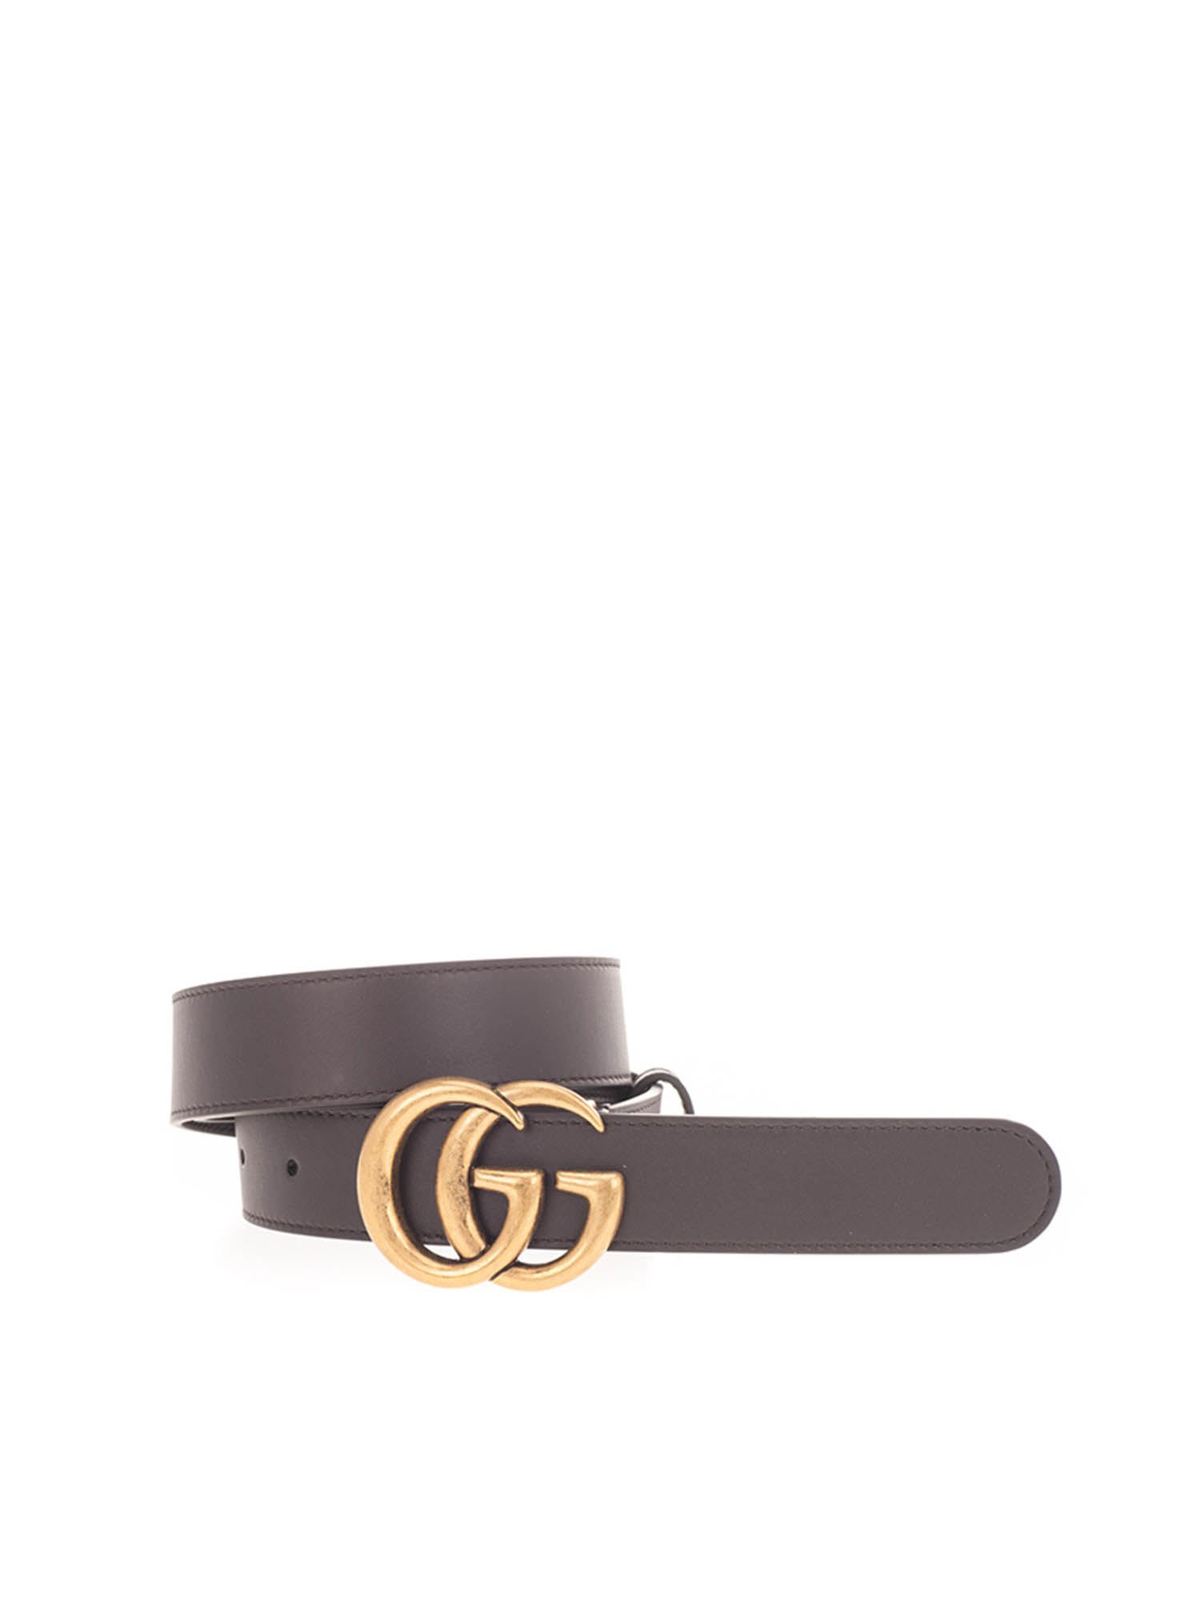 brown gg belt